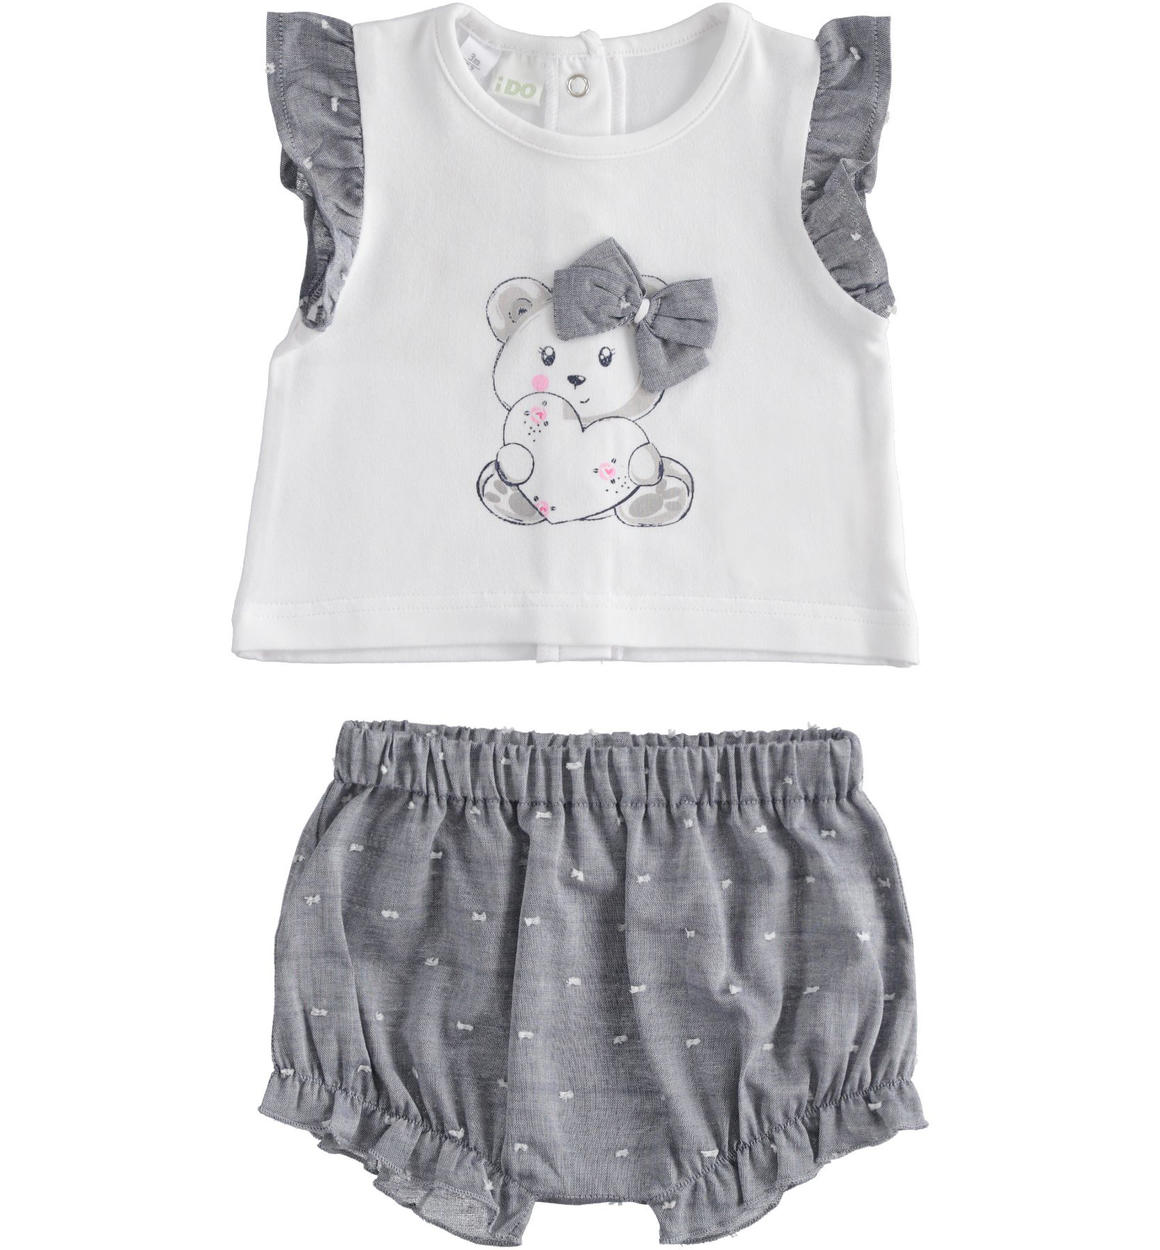 Completo neonata t-shirt con orsacchiotto e shorts BIANCO iDO